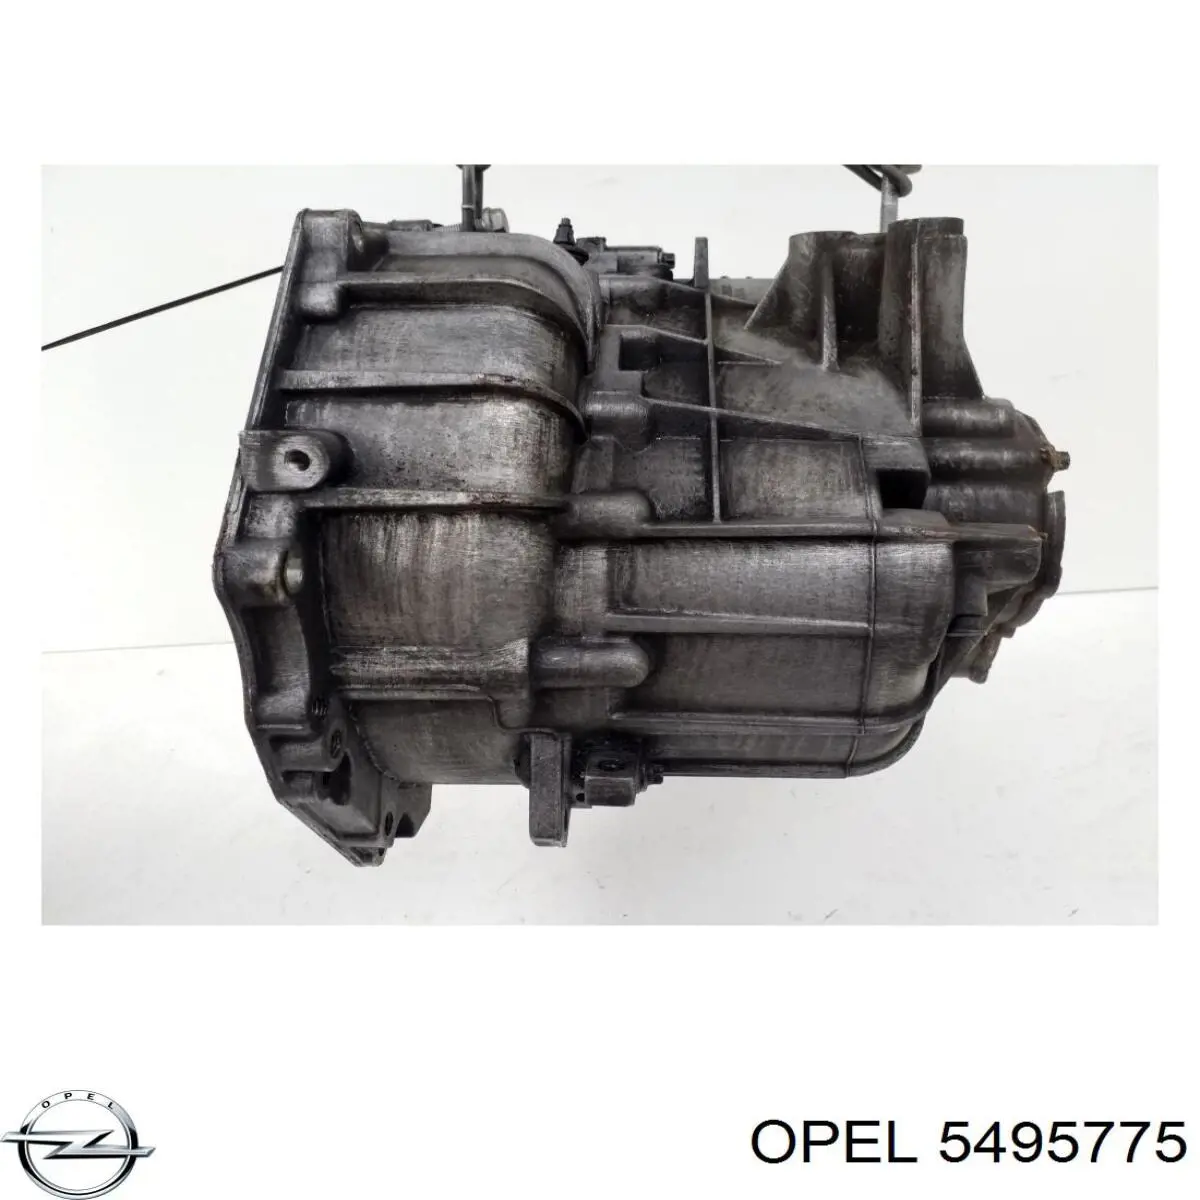 Caja de cambios mecánica, completa para Opel Astra (F35)